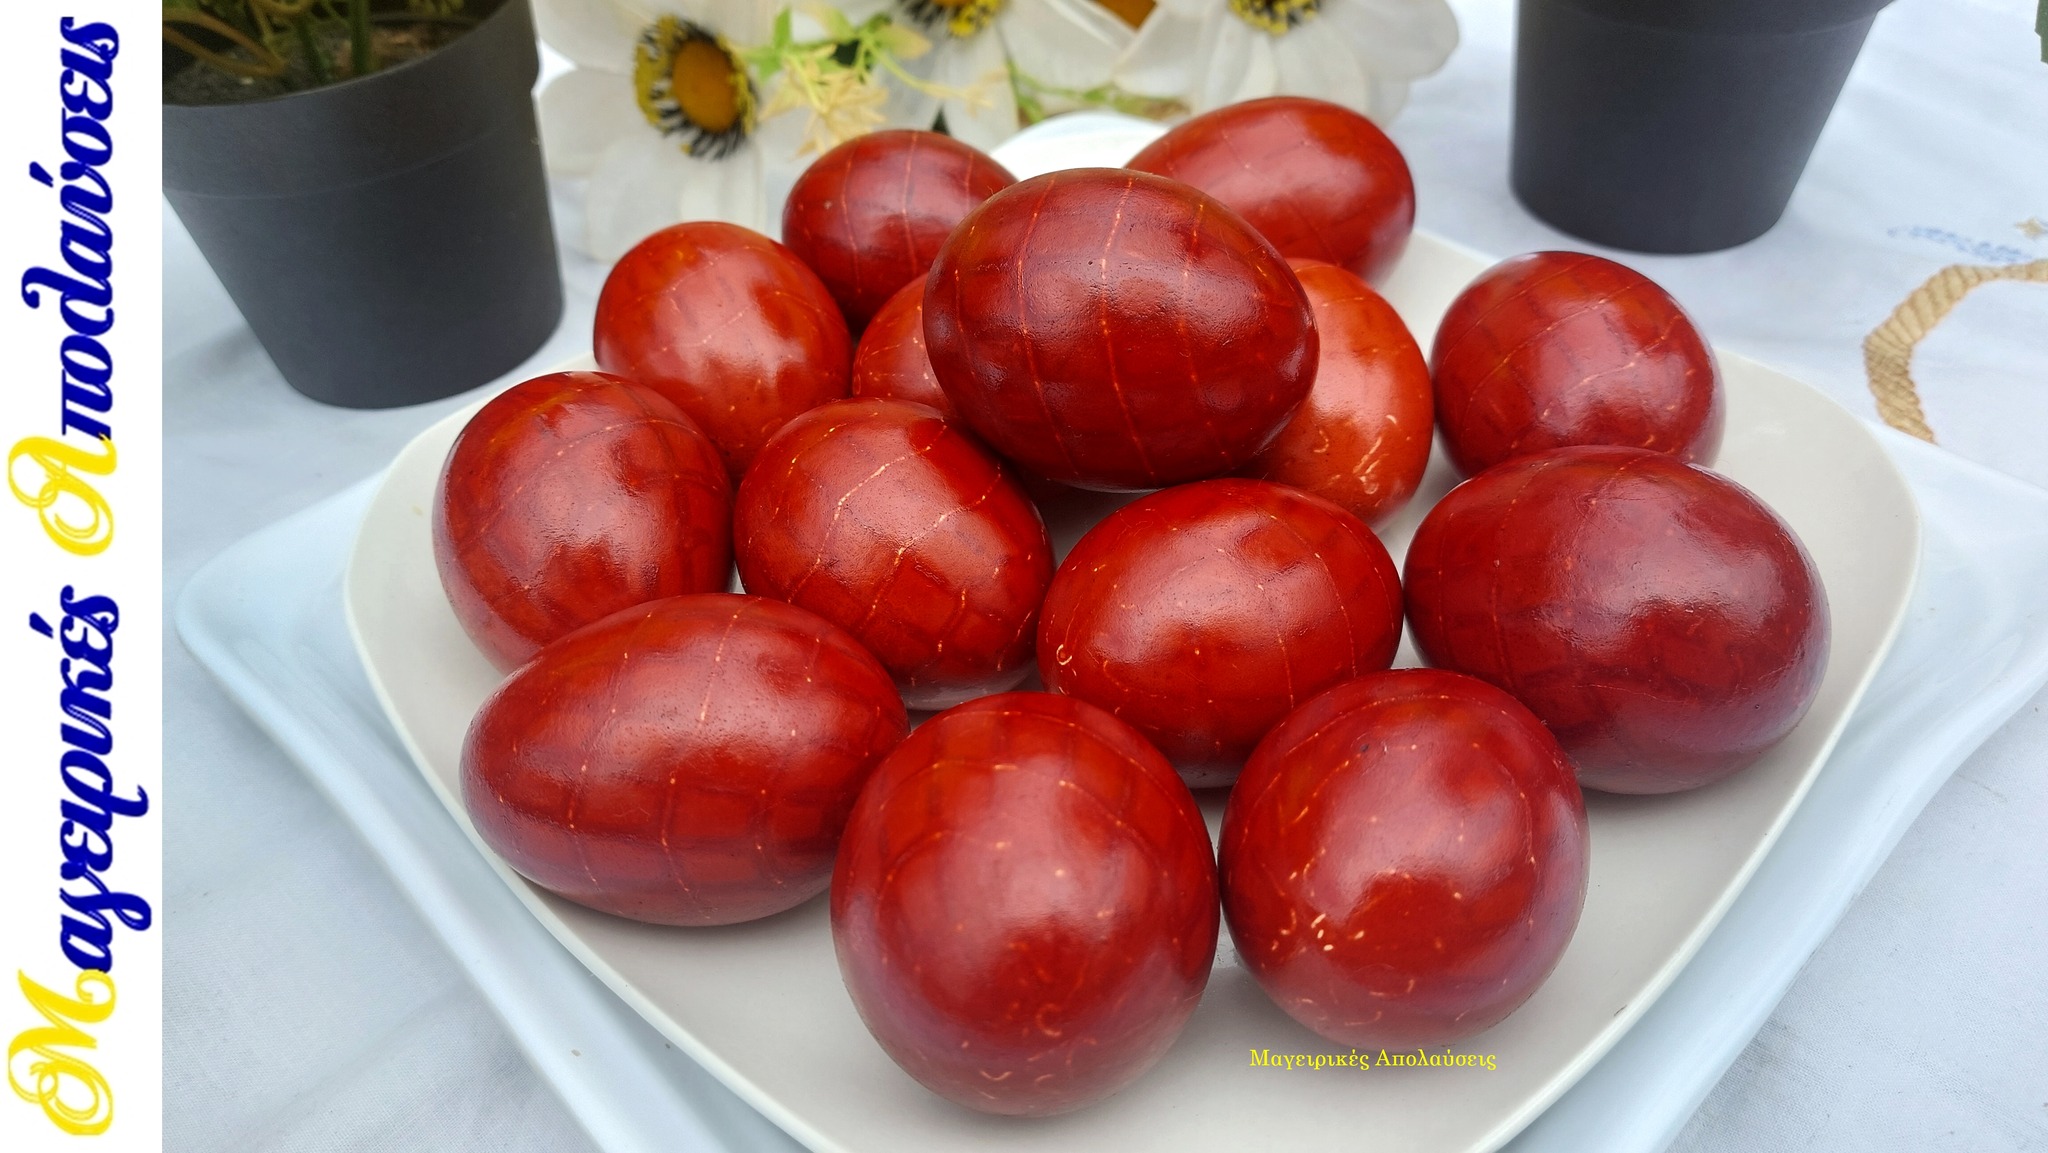 βάφουμε-τα-πασχαλινά αυγά-κόκκινα-με-φυσικό τρόπο-ριζάρι-Γιώργος Ζώλης-